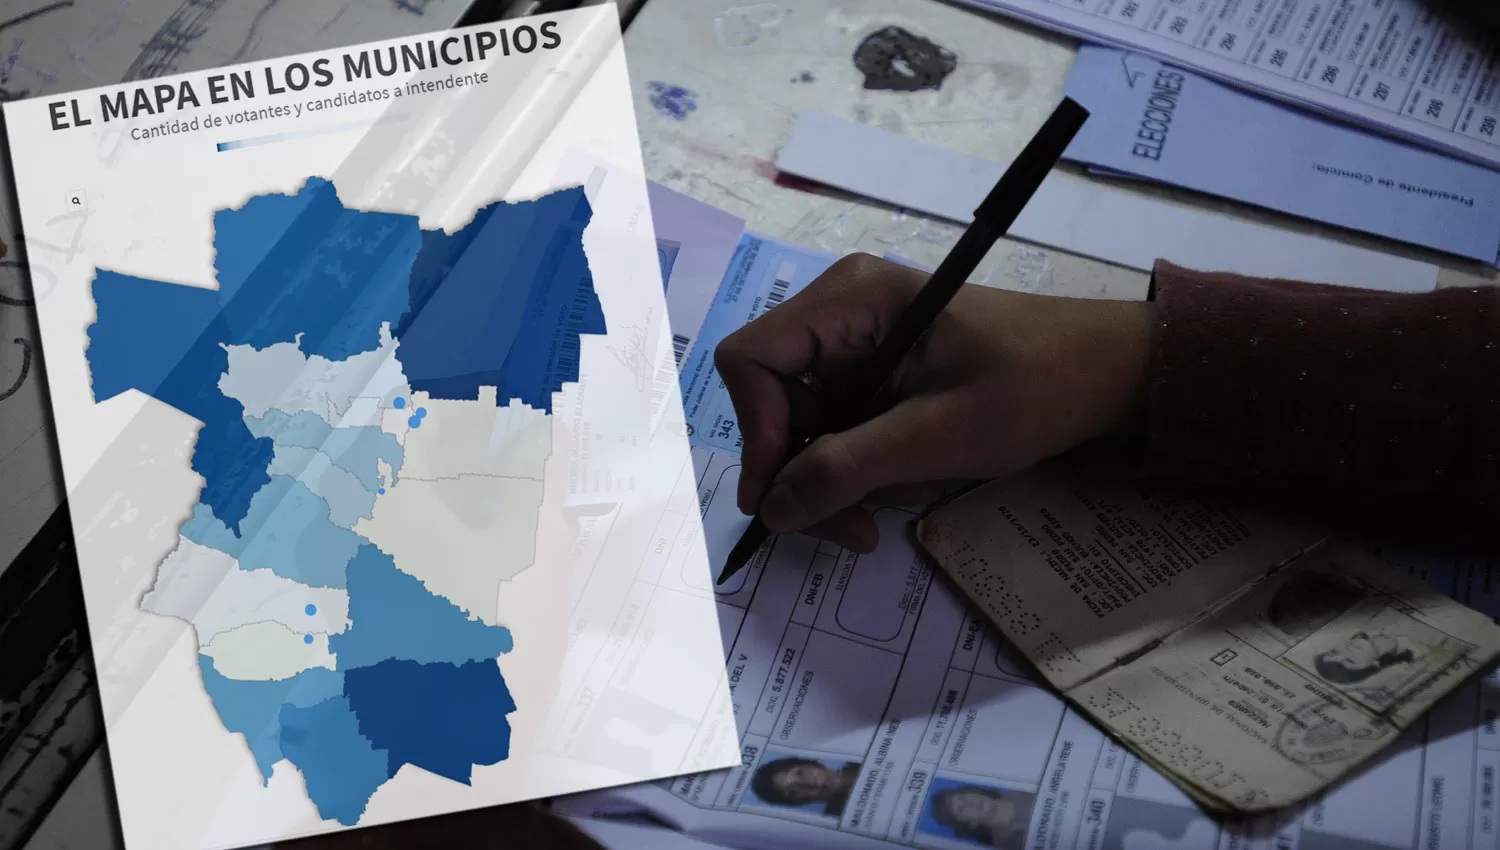 EL MAPA EN LOS MUNICIPIOS. Cantidad de votantes y candidatos a intendente.